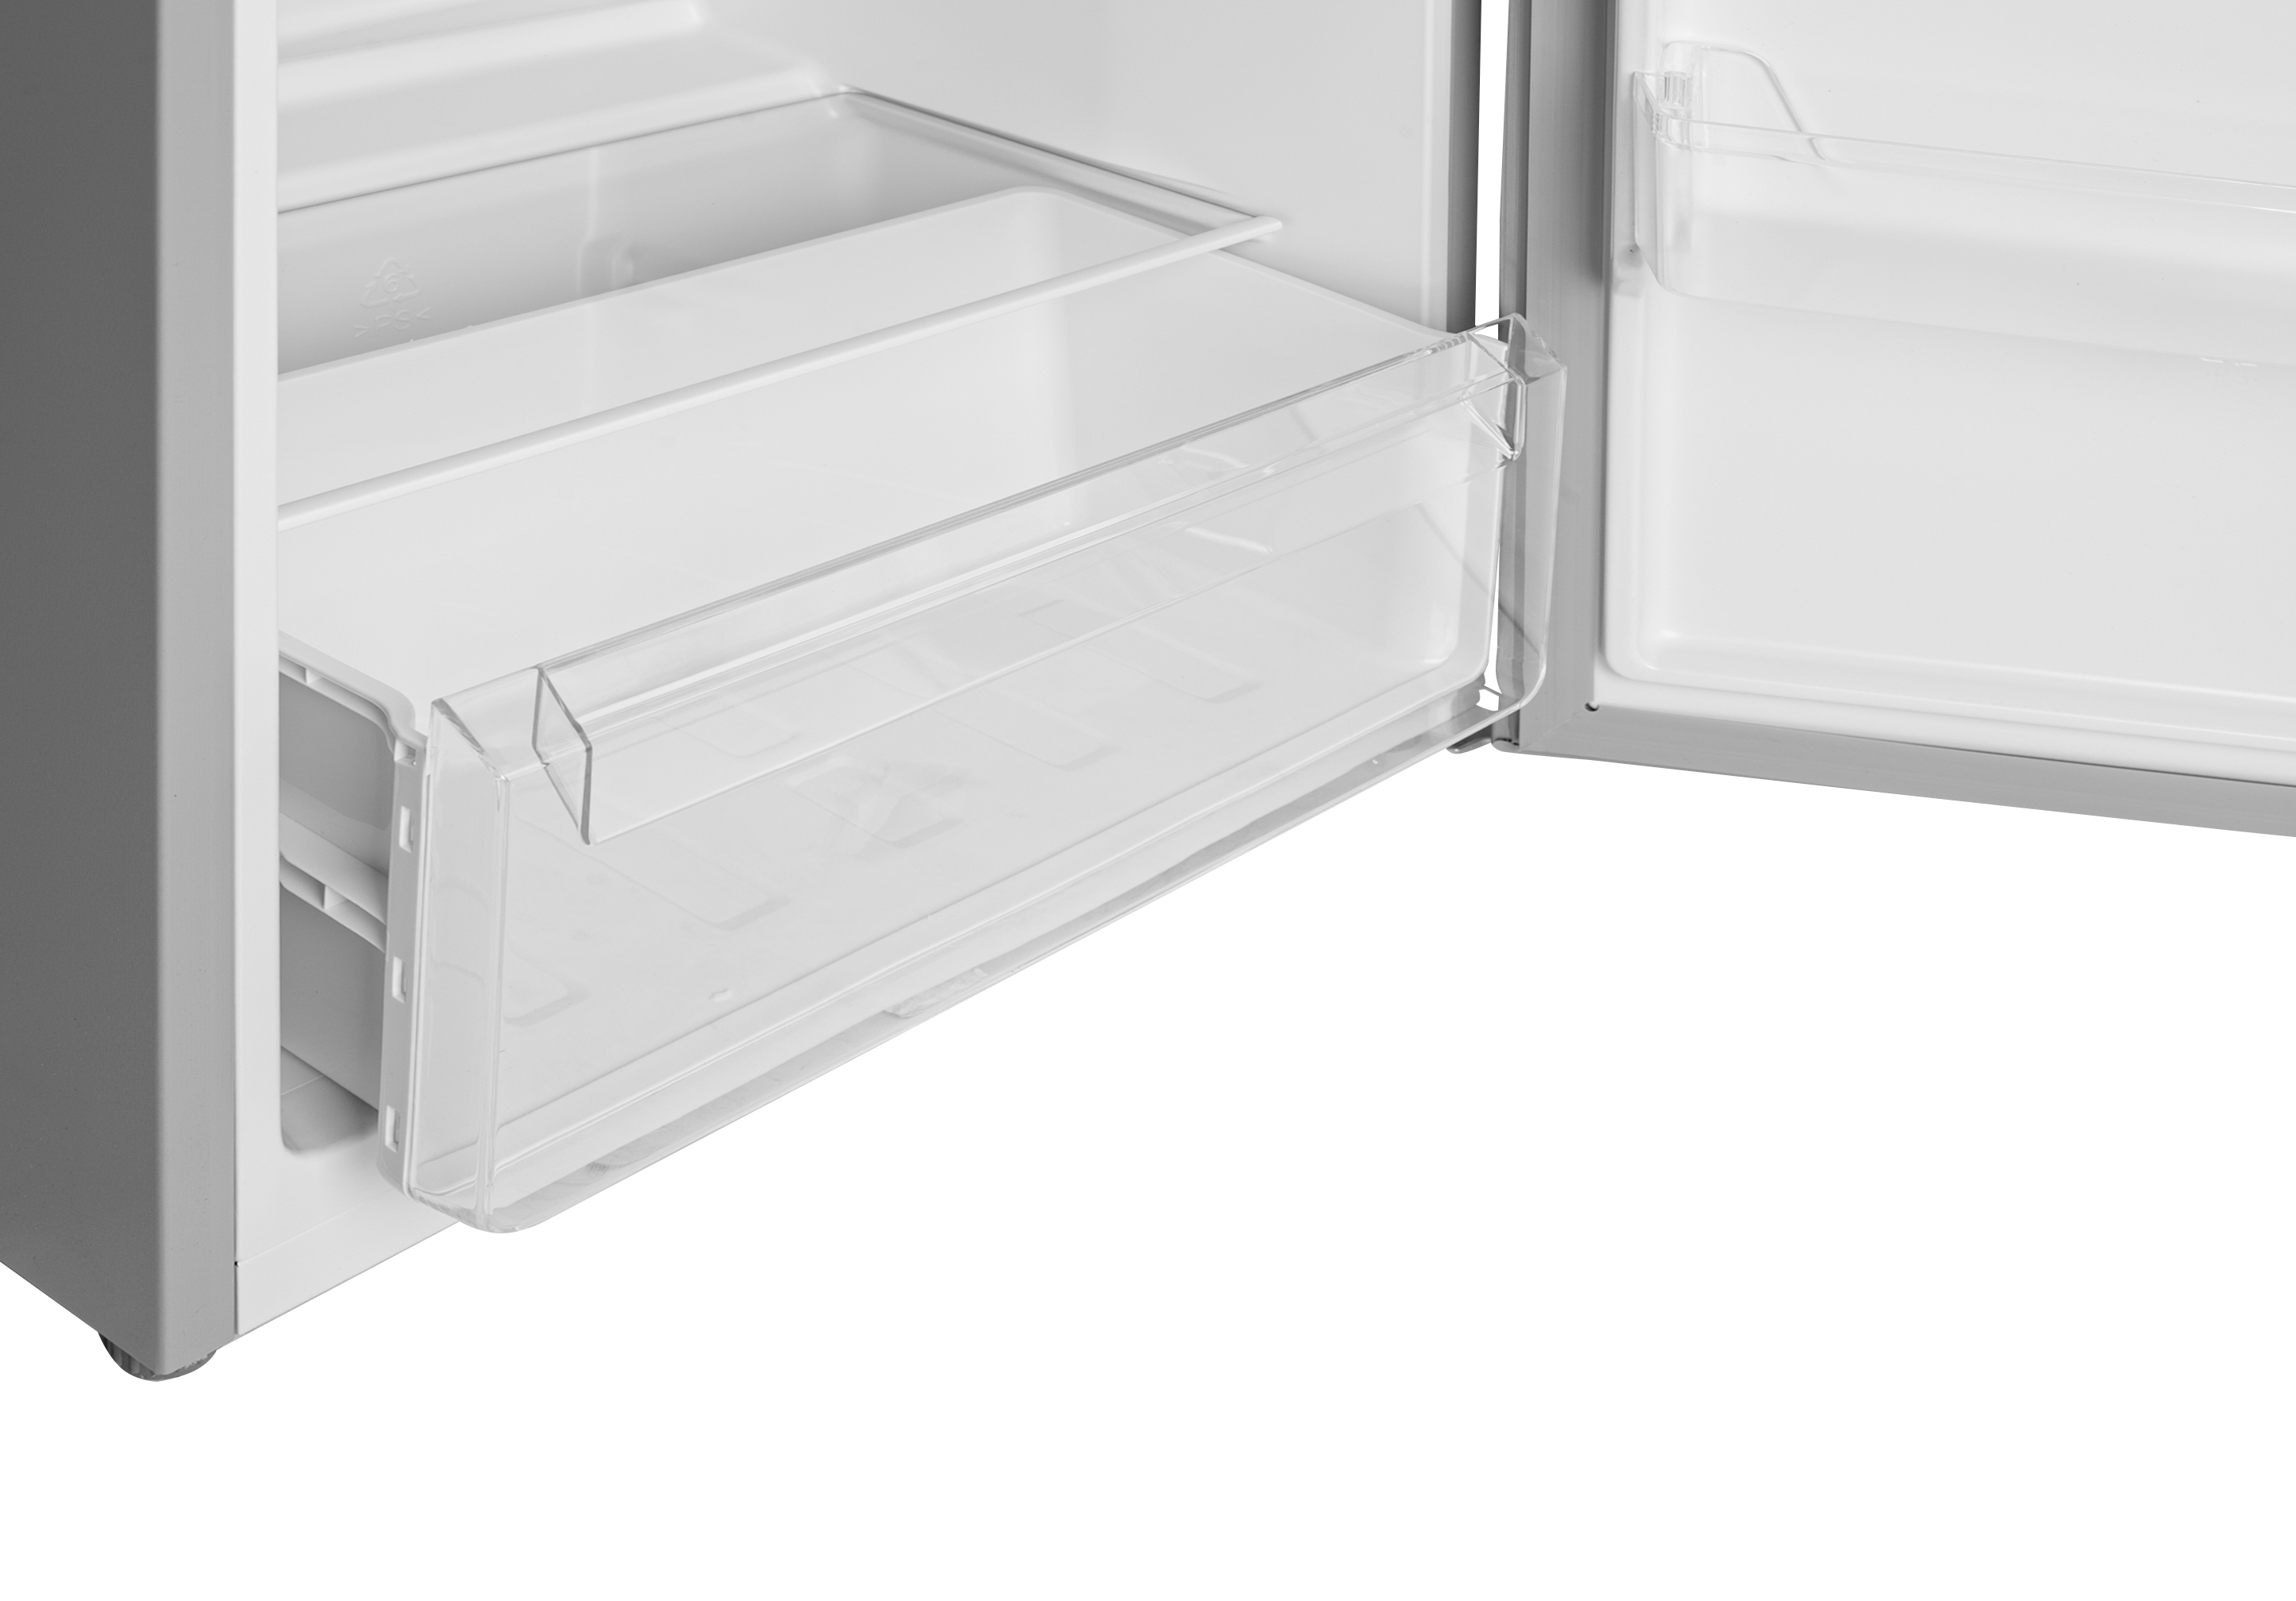 Холодильник Grifon DFV-143S отзывы - изображения 5